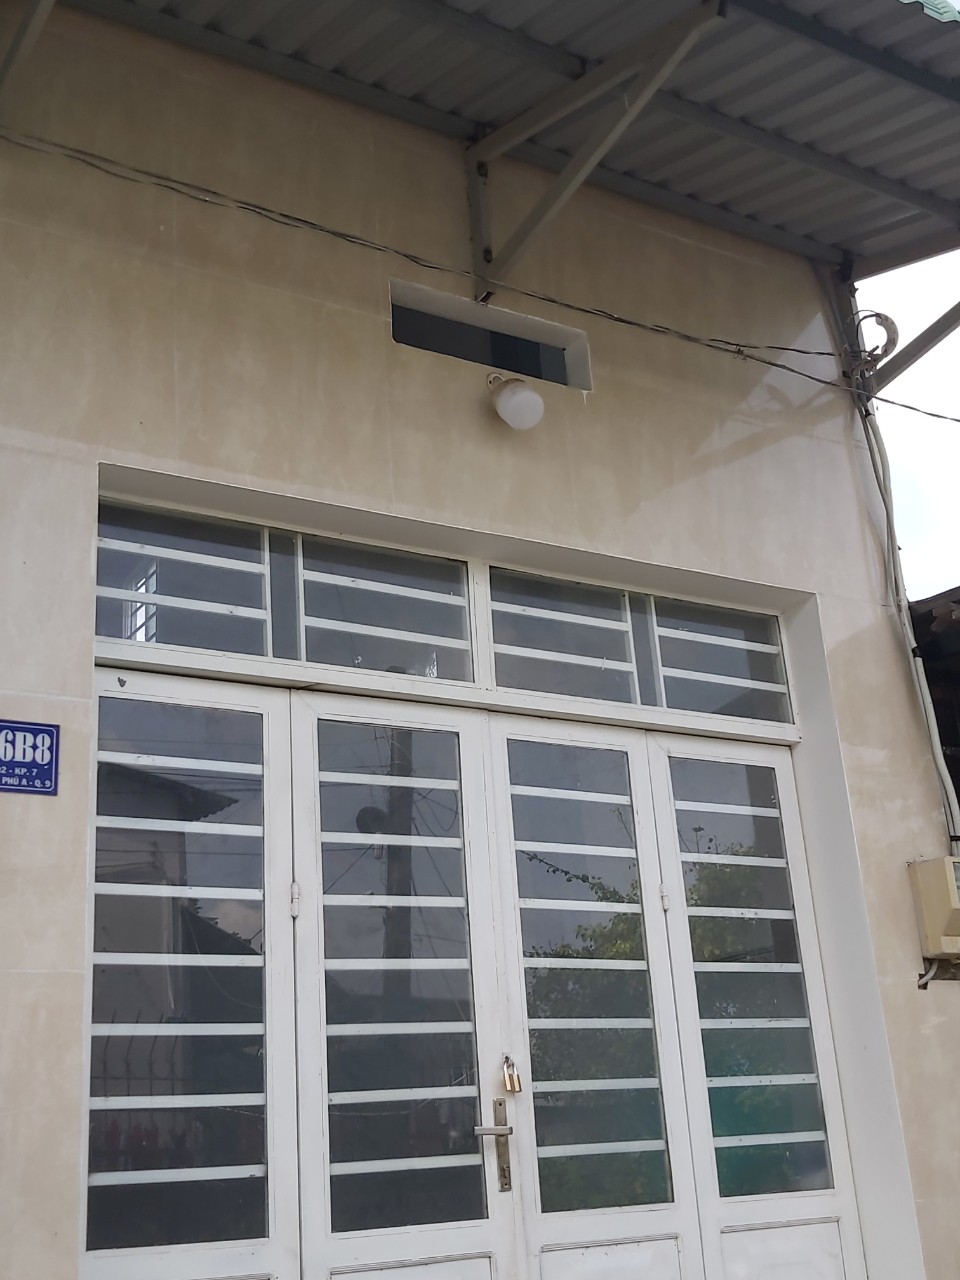  Bán nhà Đường 102 Tăng Nhơn Phú A  75.8m2 giá tốt cho nhà đầu tư